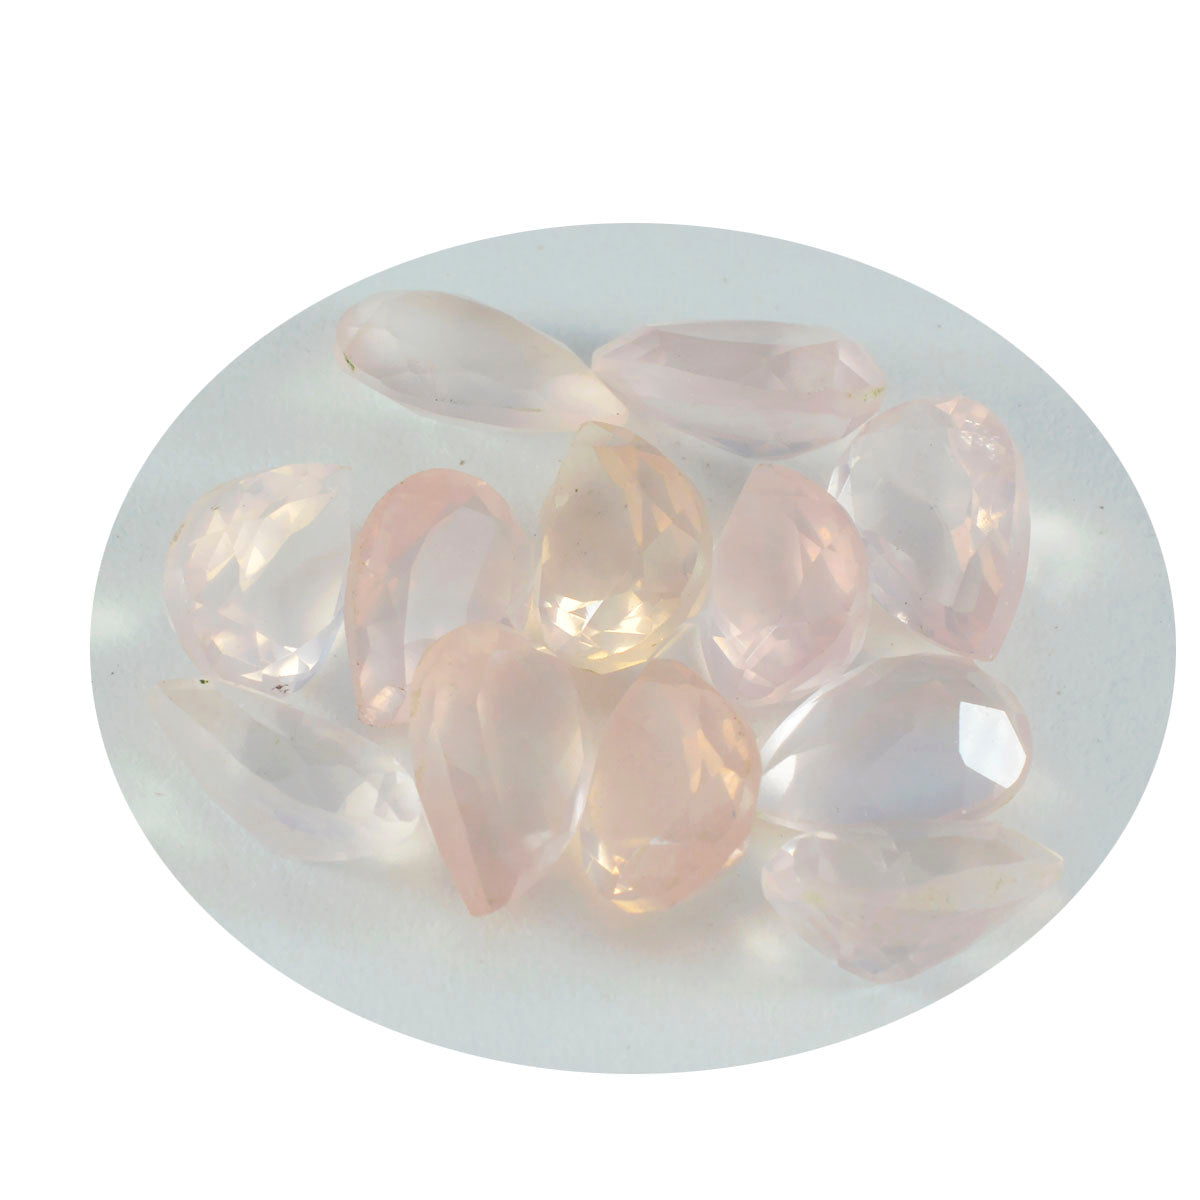 riyogems 1 шт. розовый кварц ограненный 7x10 мм грушевидной формы красивый качественный свободный драгоценный камень